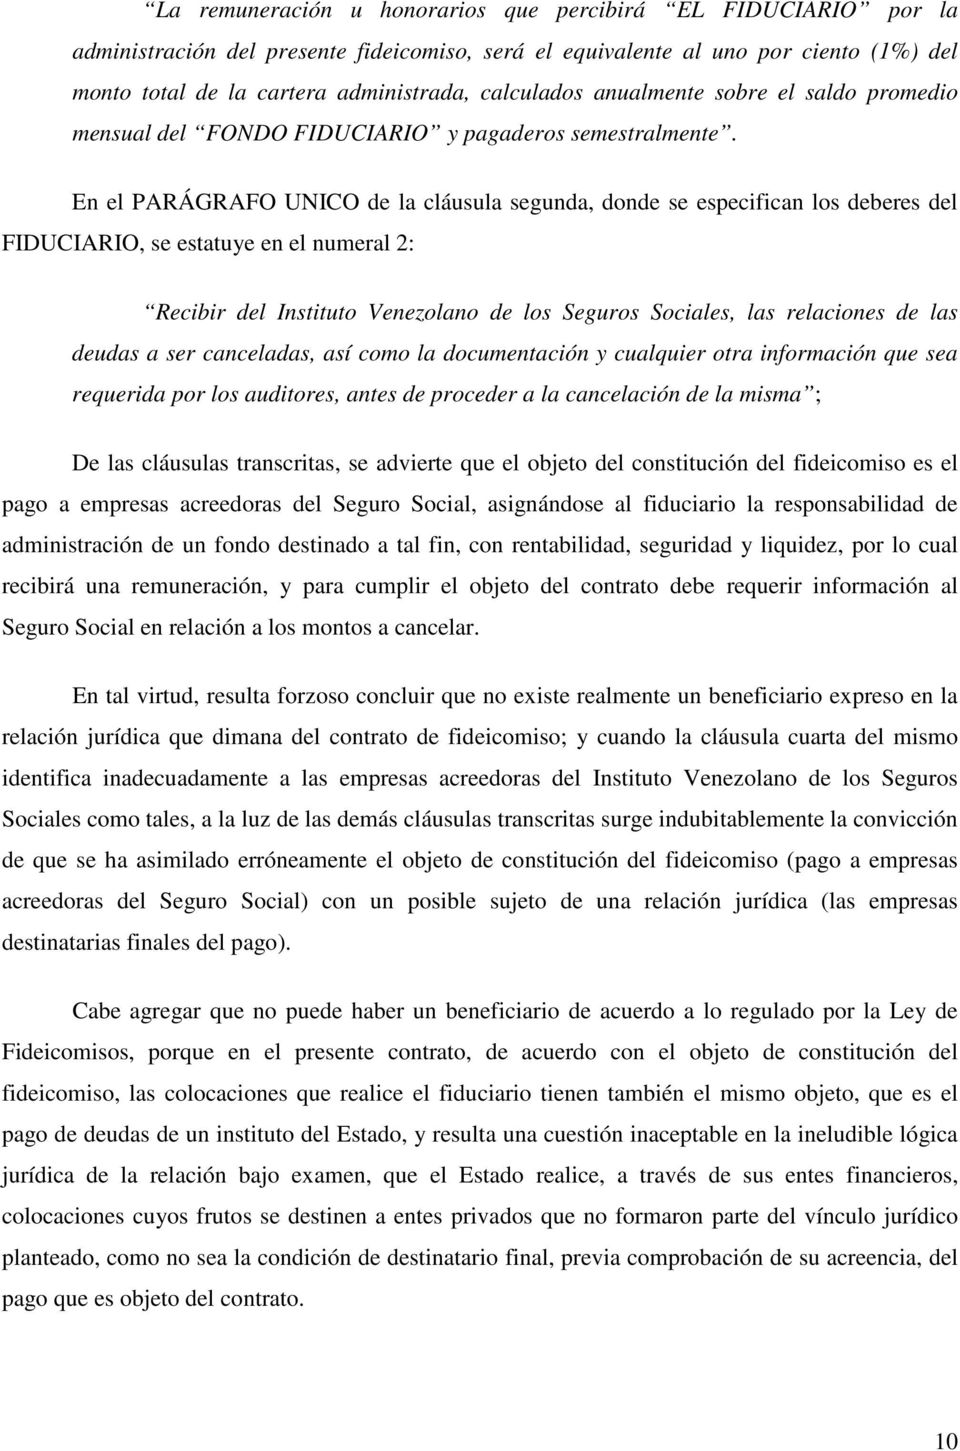 En el PARÁGRAFO UNICO de la cláusula segunda, donde se especifican los deberes del FIDUCIARIO, se estatuye en el numeral 2: Recibir del Instituto Venezolano de los Seguros Sociales, las relaciones de